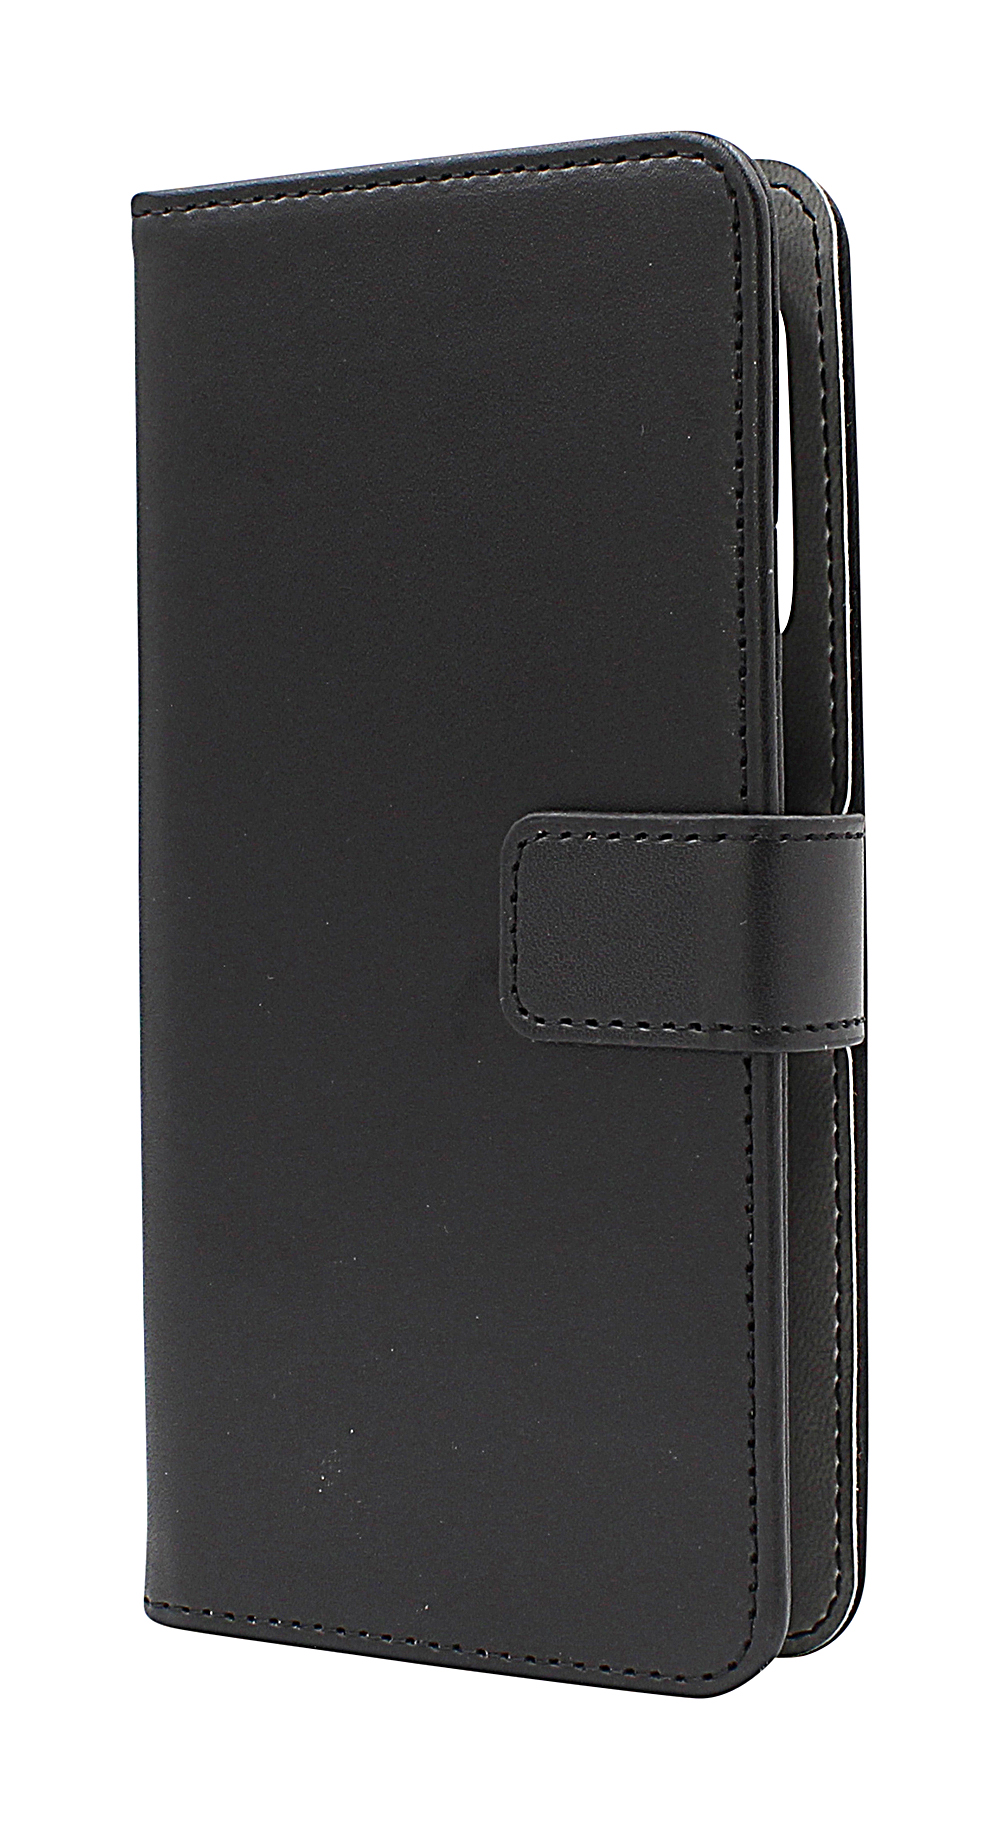 Skimblocker Magnet Wallet Doro 8110